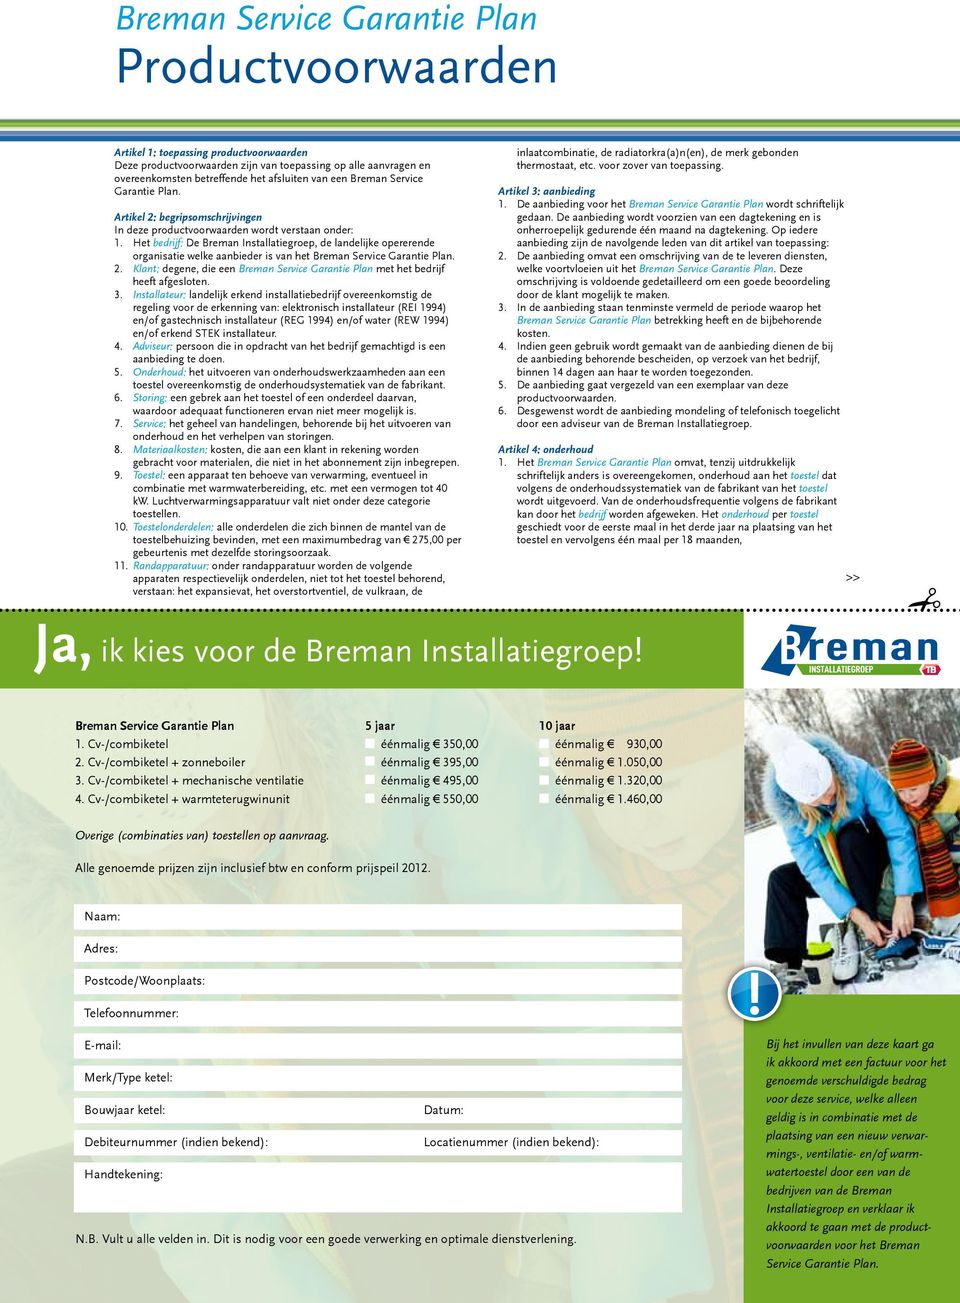 Het bedrijf: De Breman Installatiegroep, de landelijke opererende organisatie welke aanbieder is van het Breman Service Garantie Plan. 2.